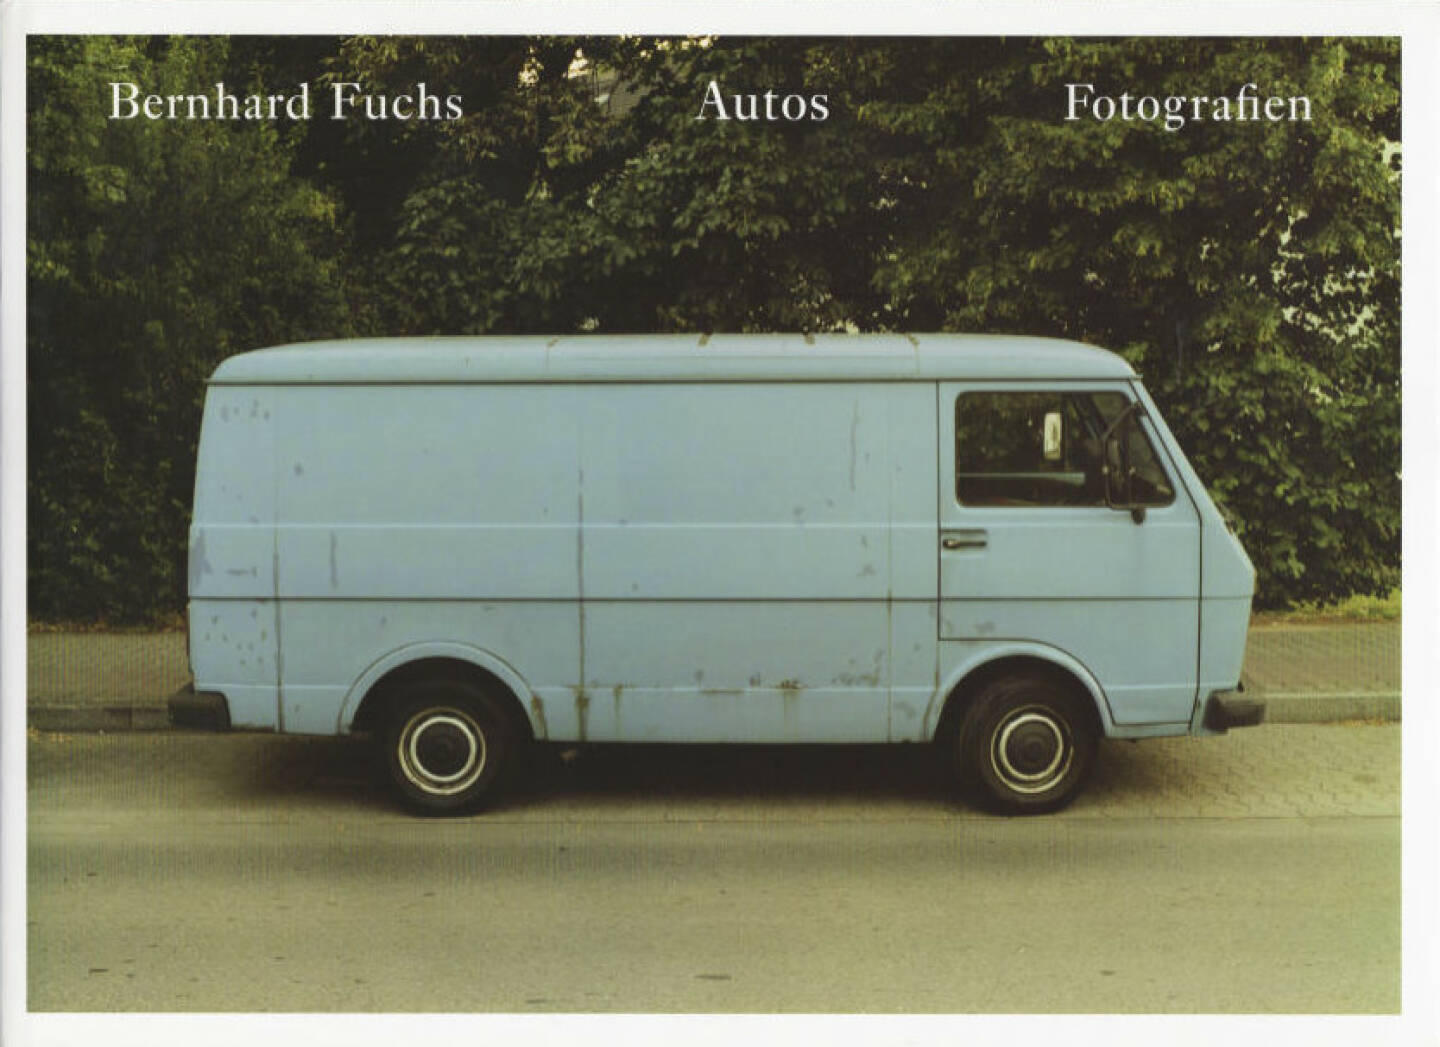 Bernhard Fuchs - Autos, Preis: 250-400 Euro, http://josefchladek.com/book/bernhard_fuchs_-_autos